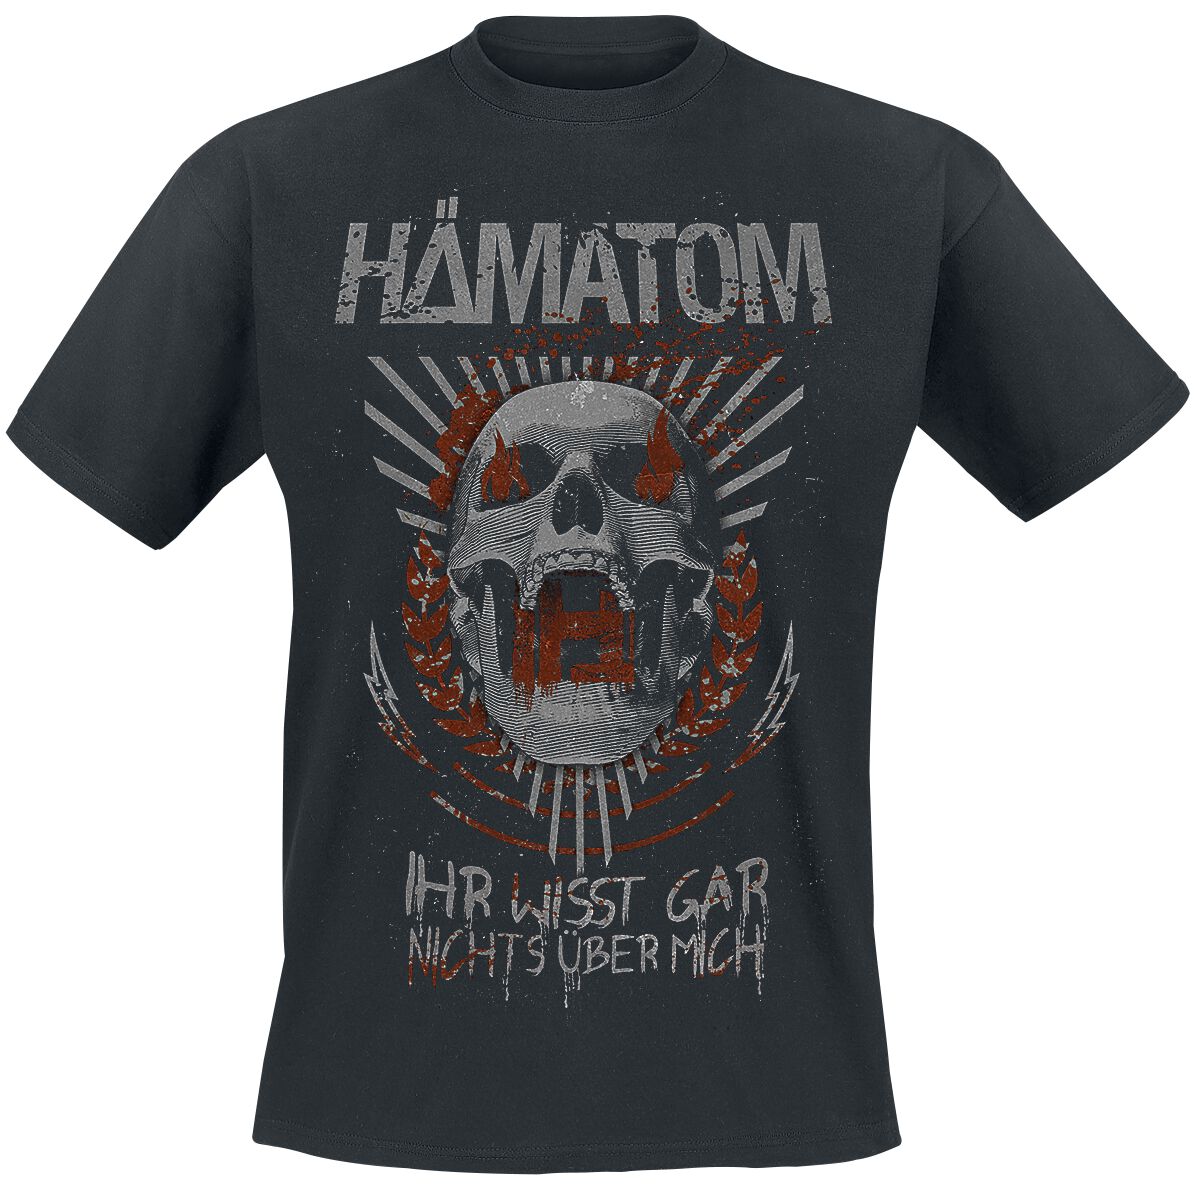 Hämatom T-Shirt - Ihr wisst gar nichts über mich - S bis 5XL - für Männer - Größe 4XL - schwarz  - Lizenziertes Merchandise!